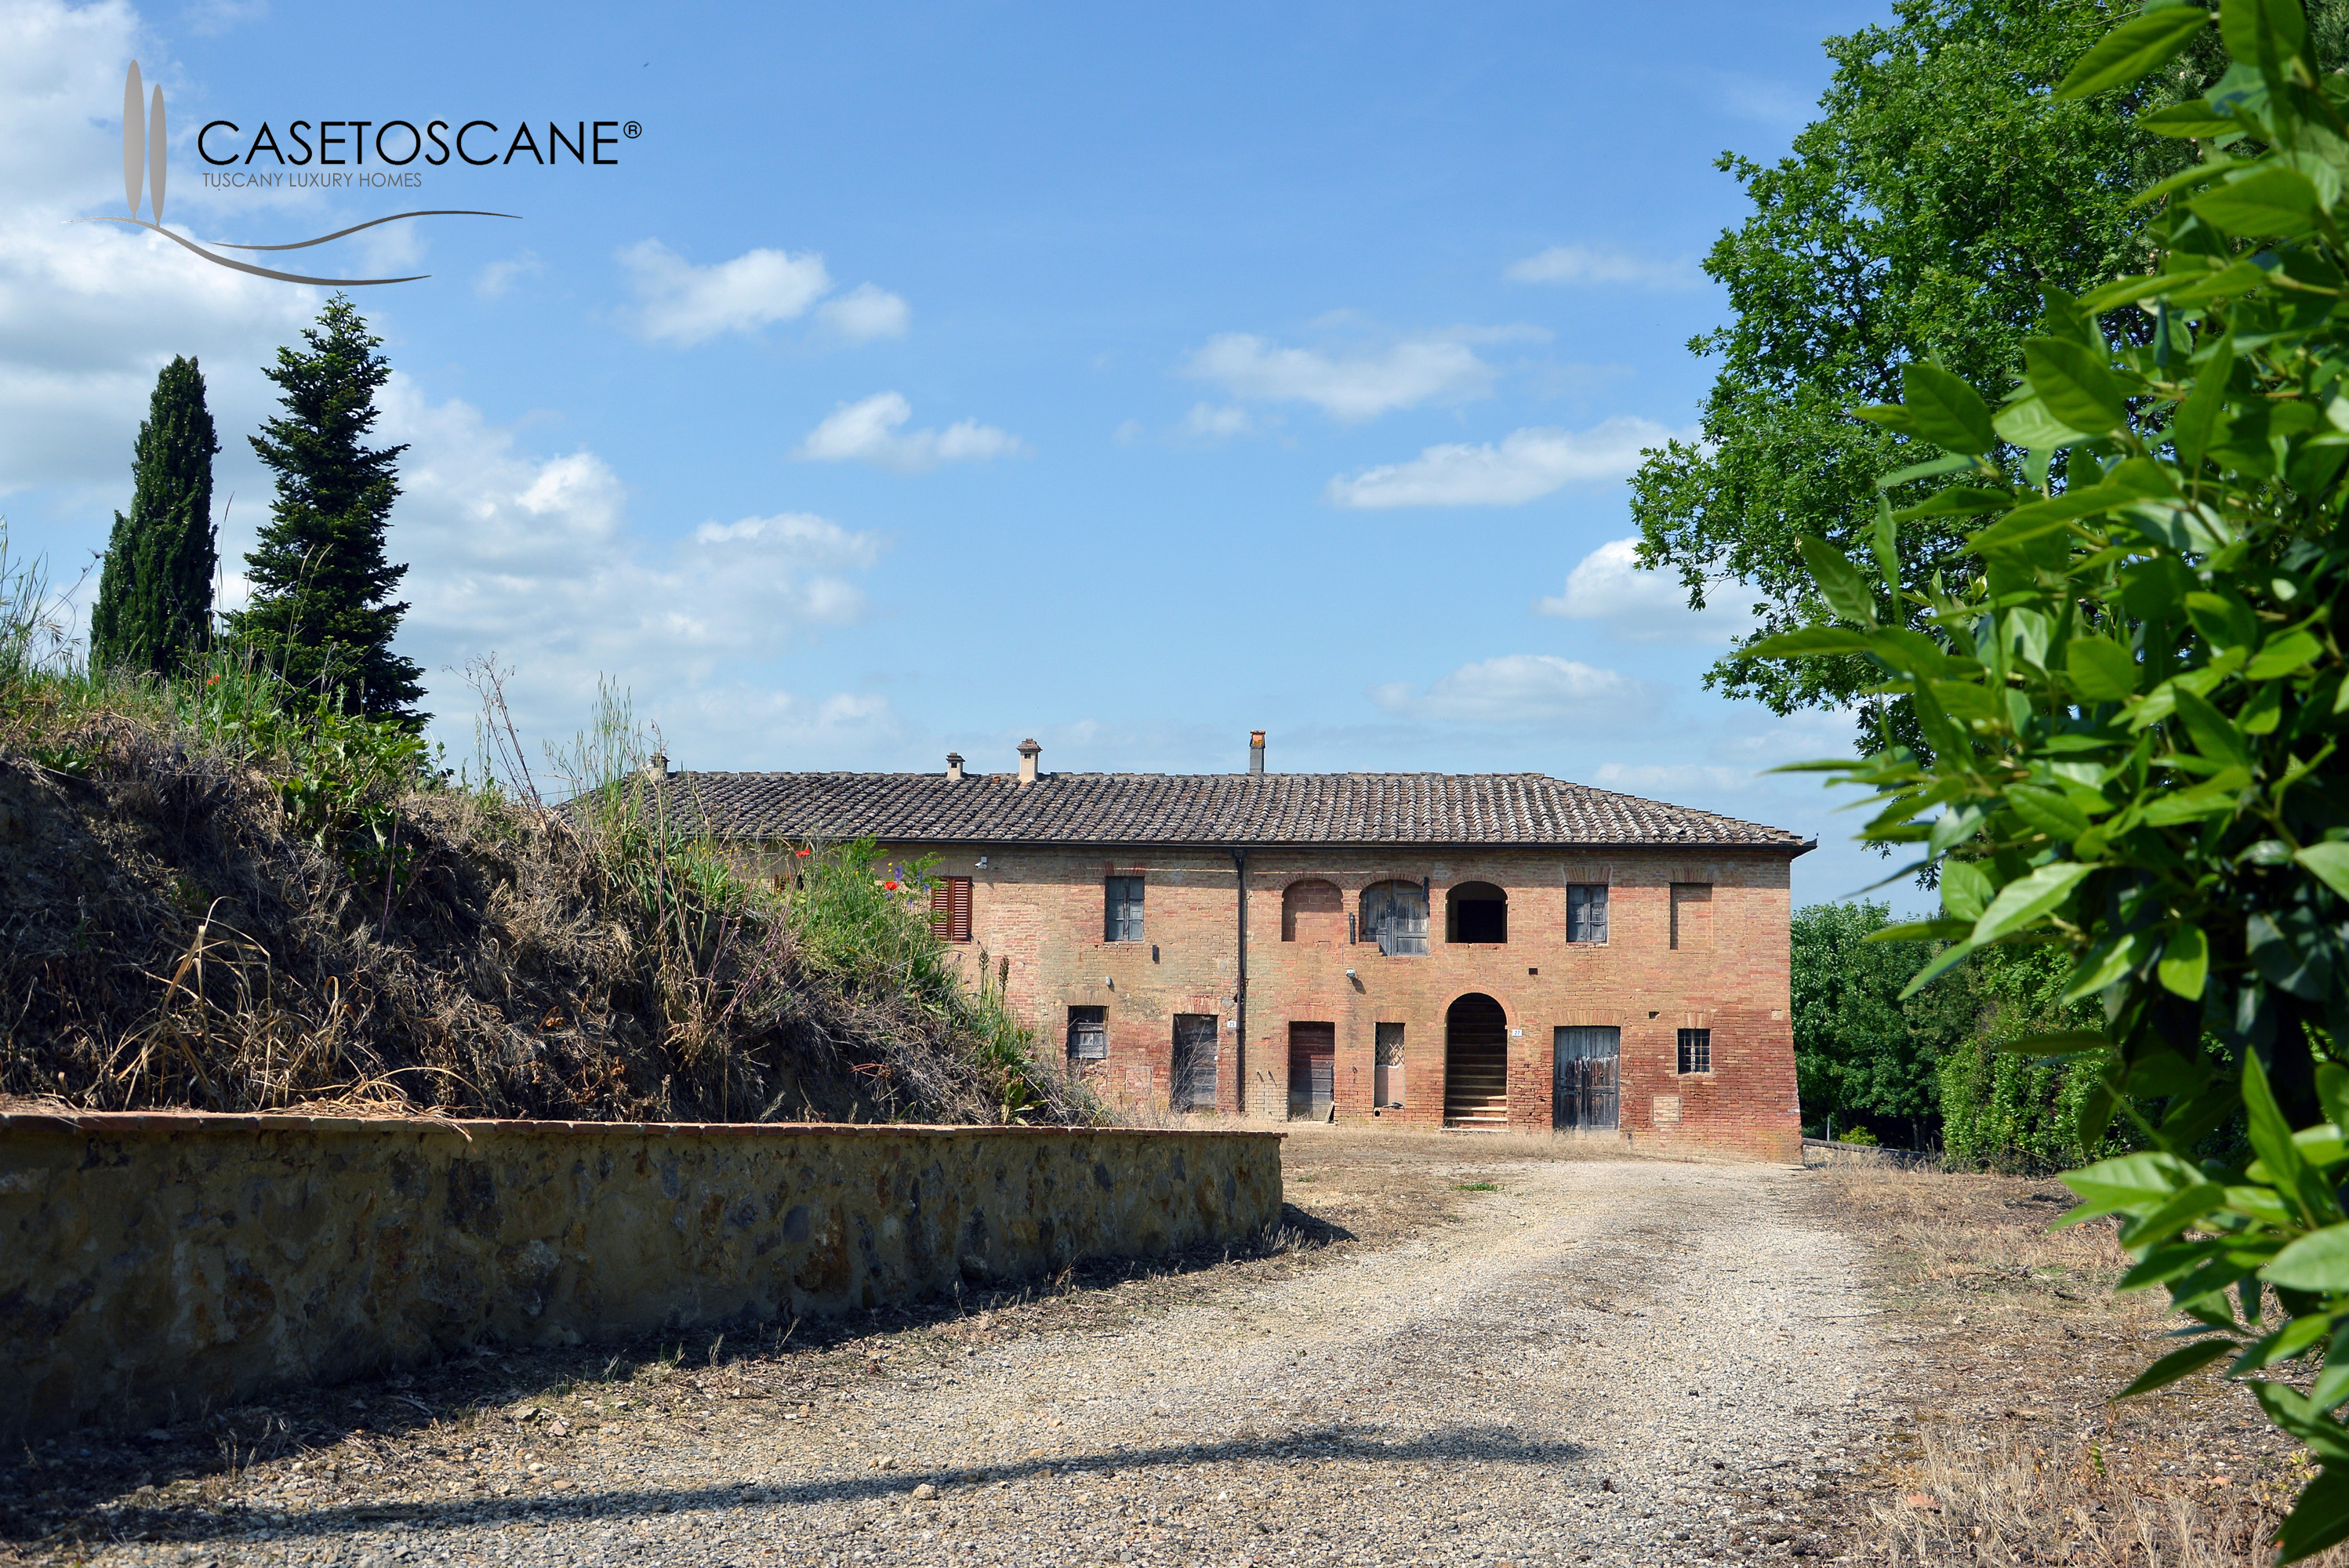 2666 - Porzione di antico casale in corso di ristrutturazione nei pressi di Siena città.